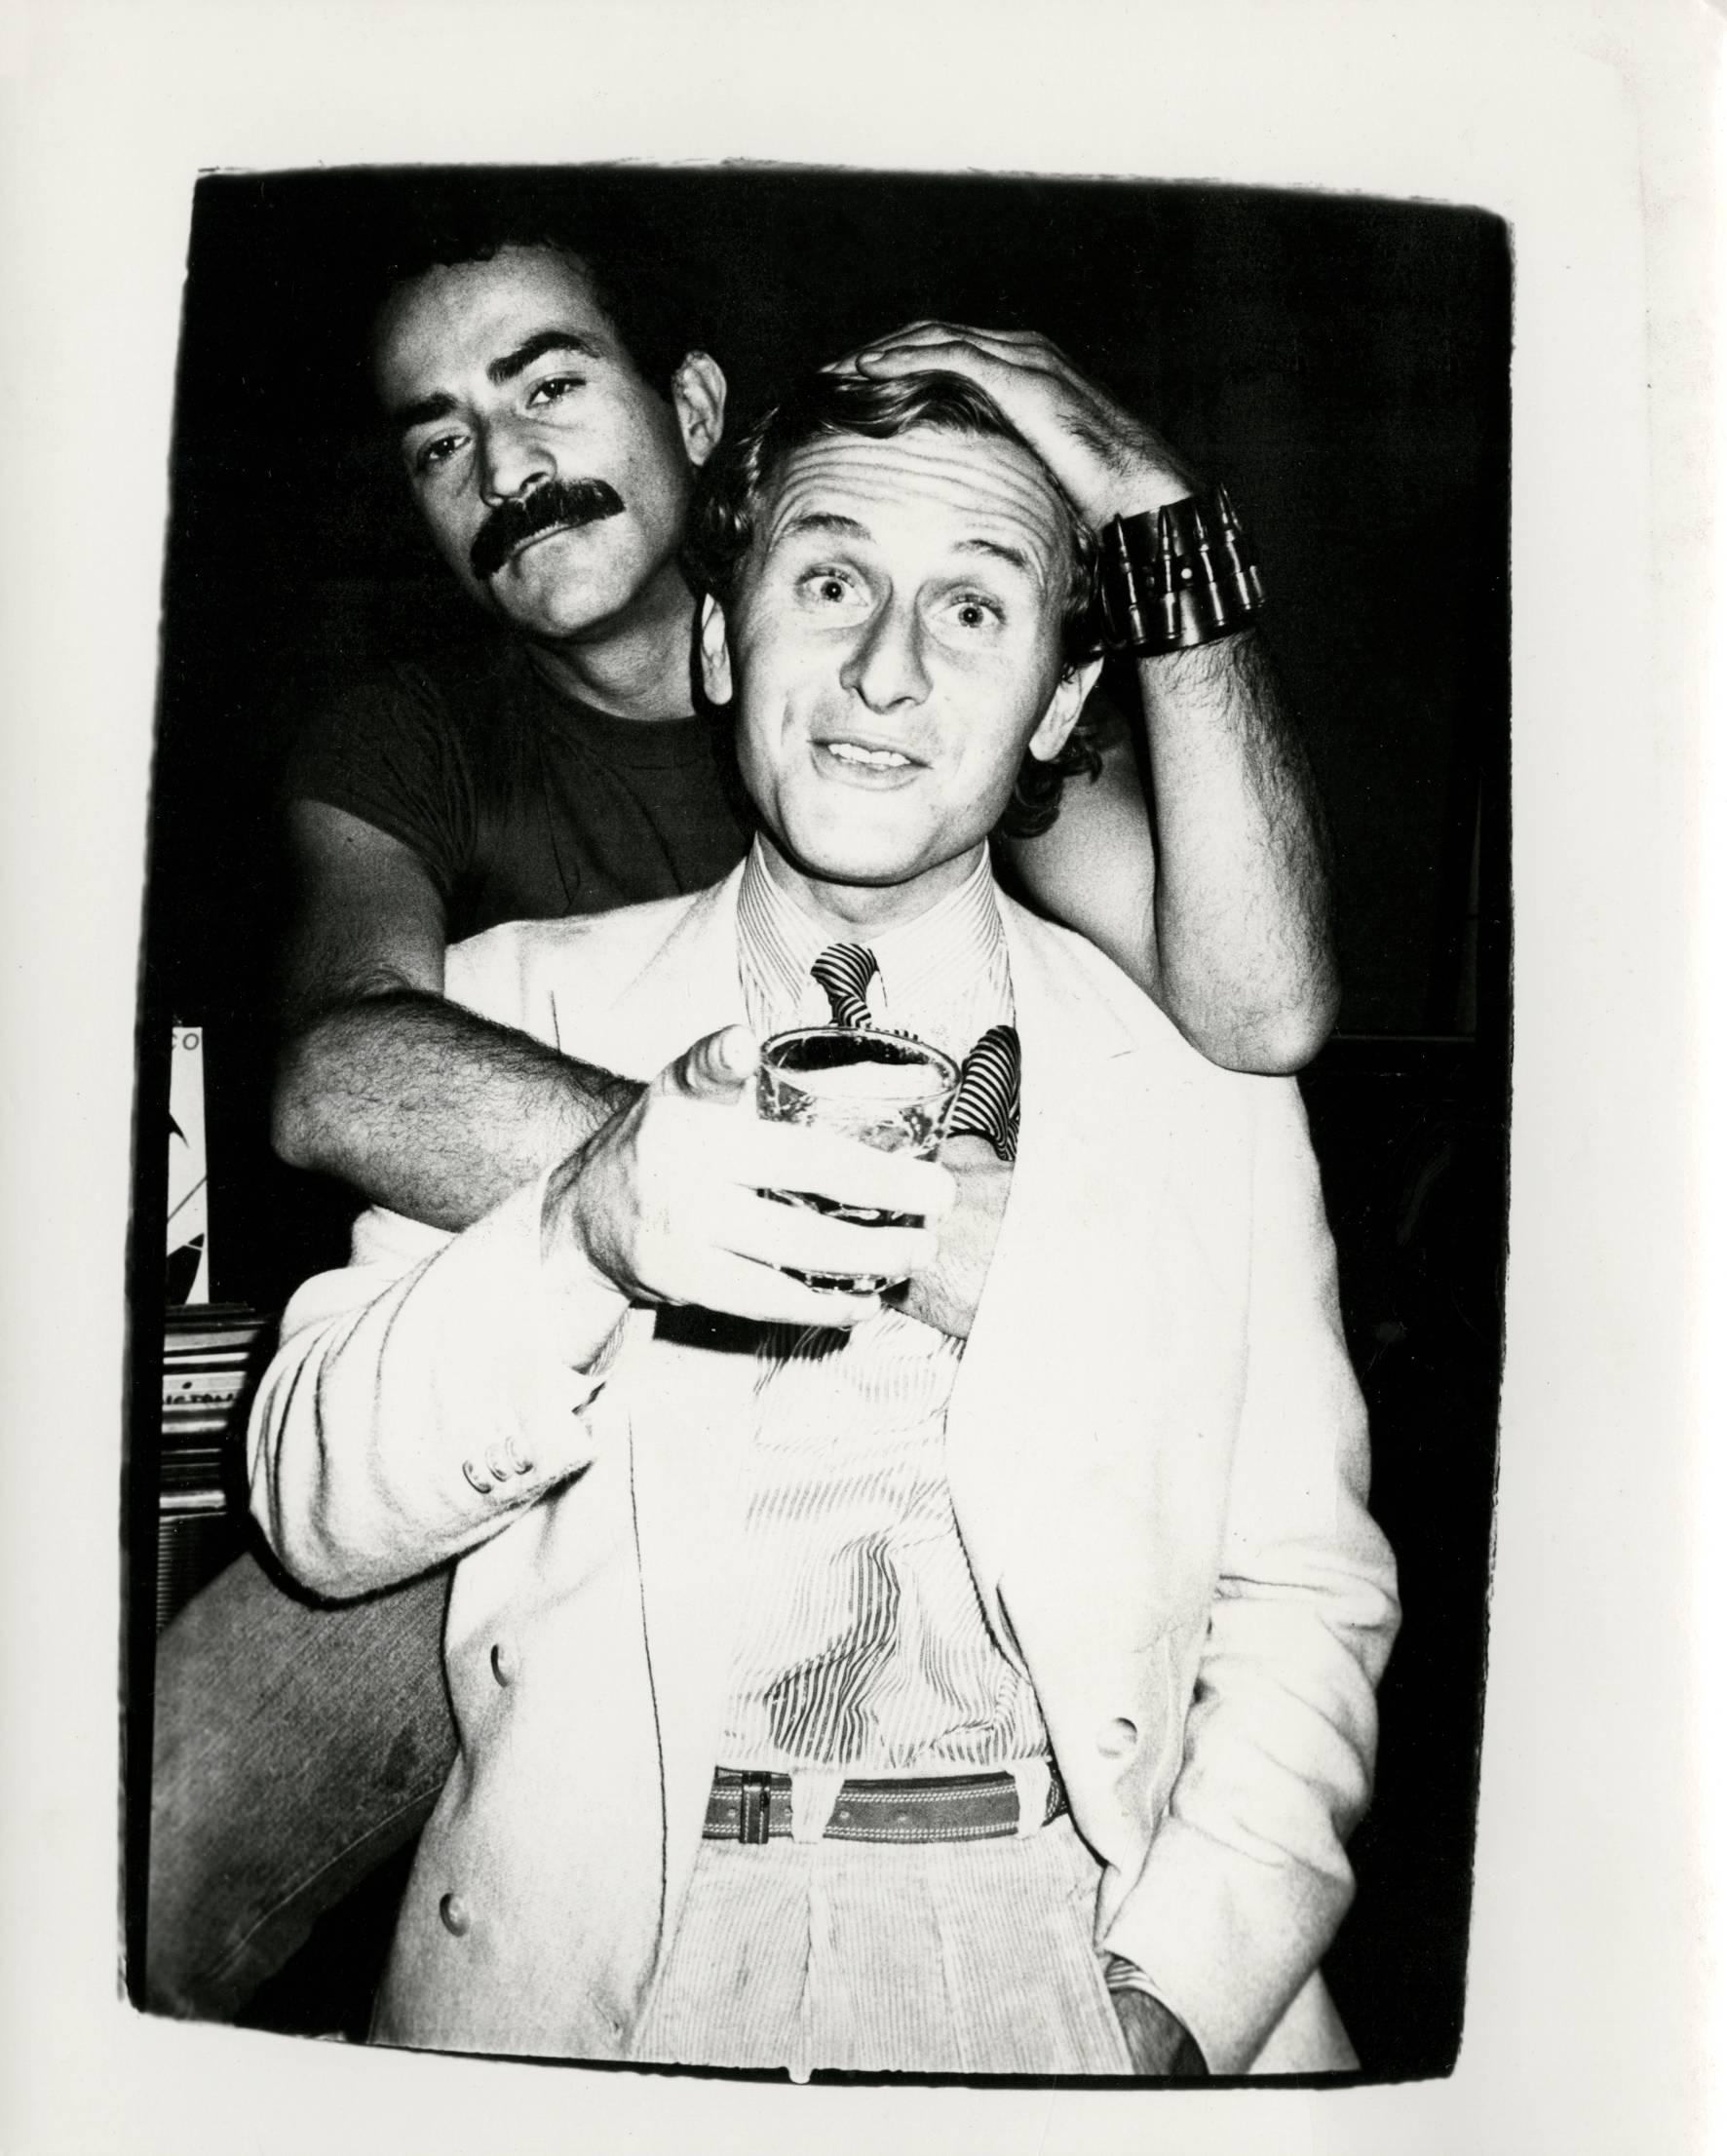 Andy Warhol, photographie de Victor Hugo et Thomas Ammann, datant d'environ 1980